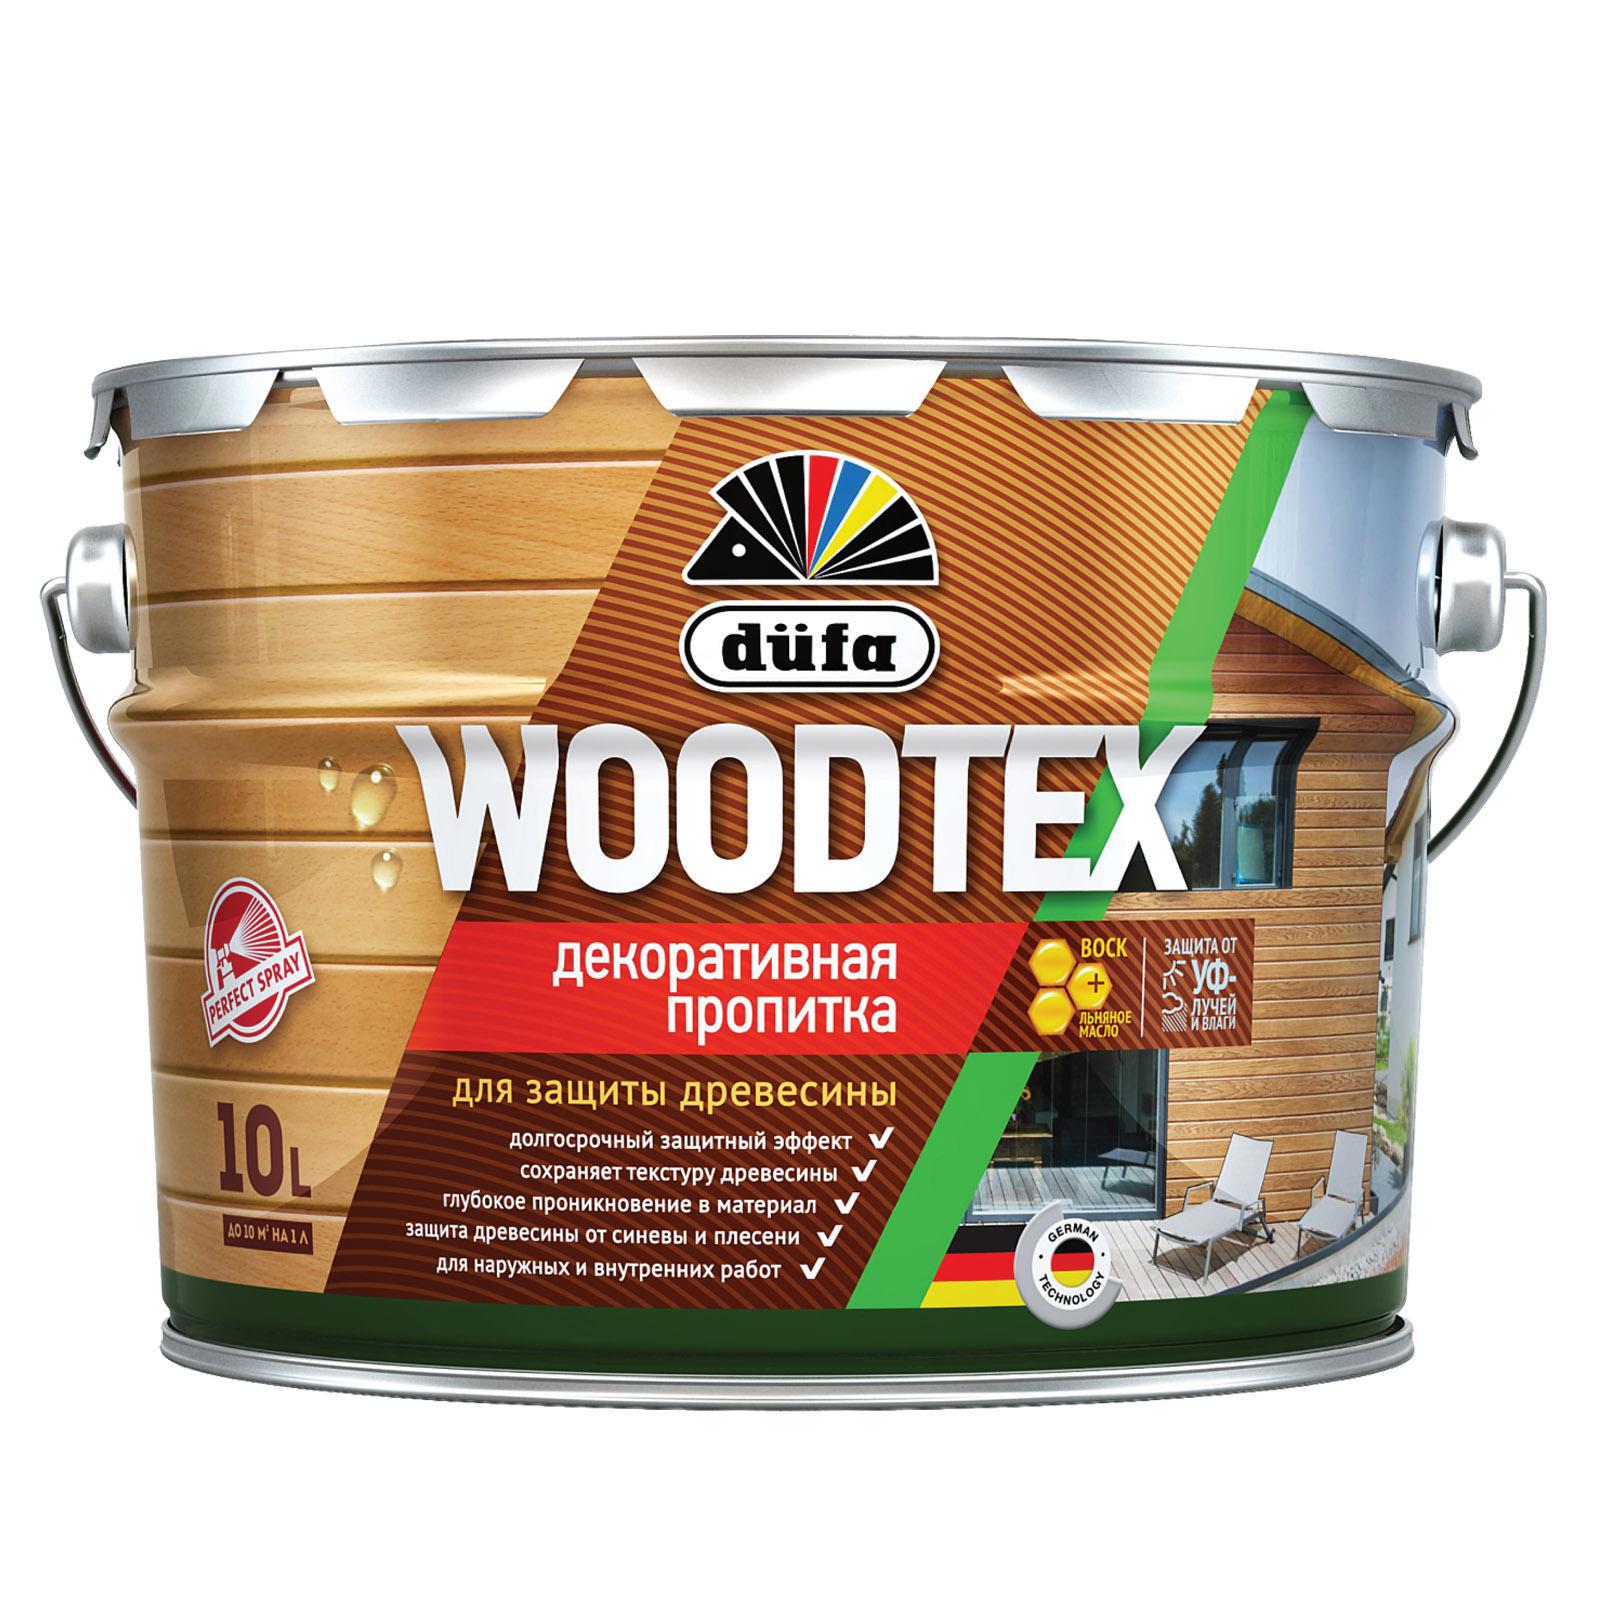 Пропитка декоративная для защиты древесины алкидная Dufa Woodtex .